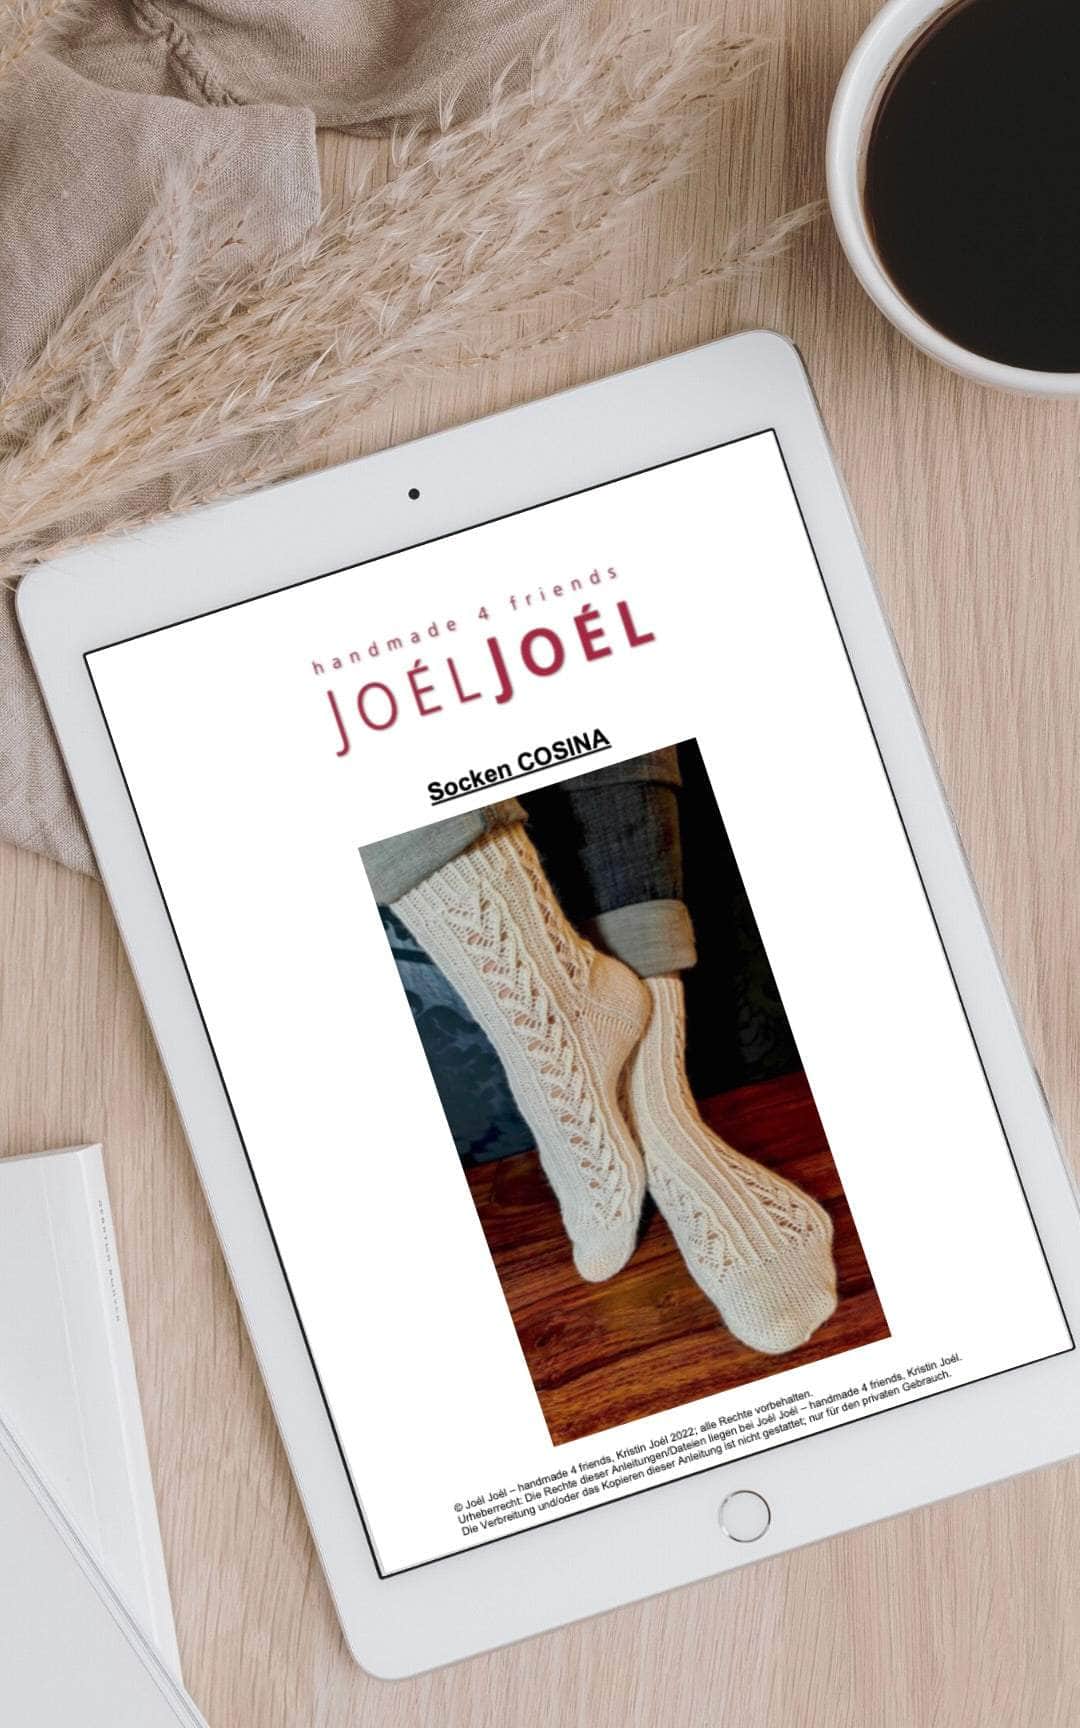 Cosina Socken - ANLEITUNG von JOÉL JOÉL jetzt online kaufen bei OONIQUE